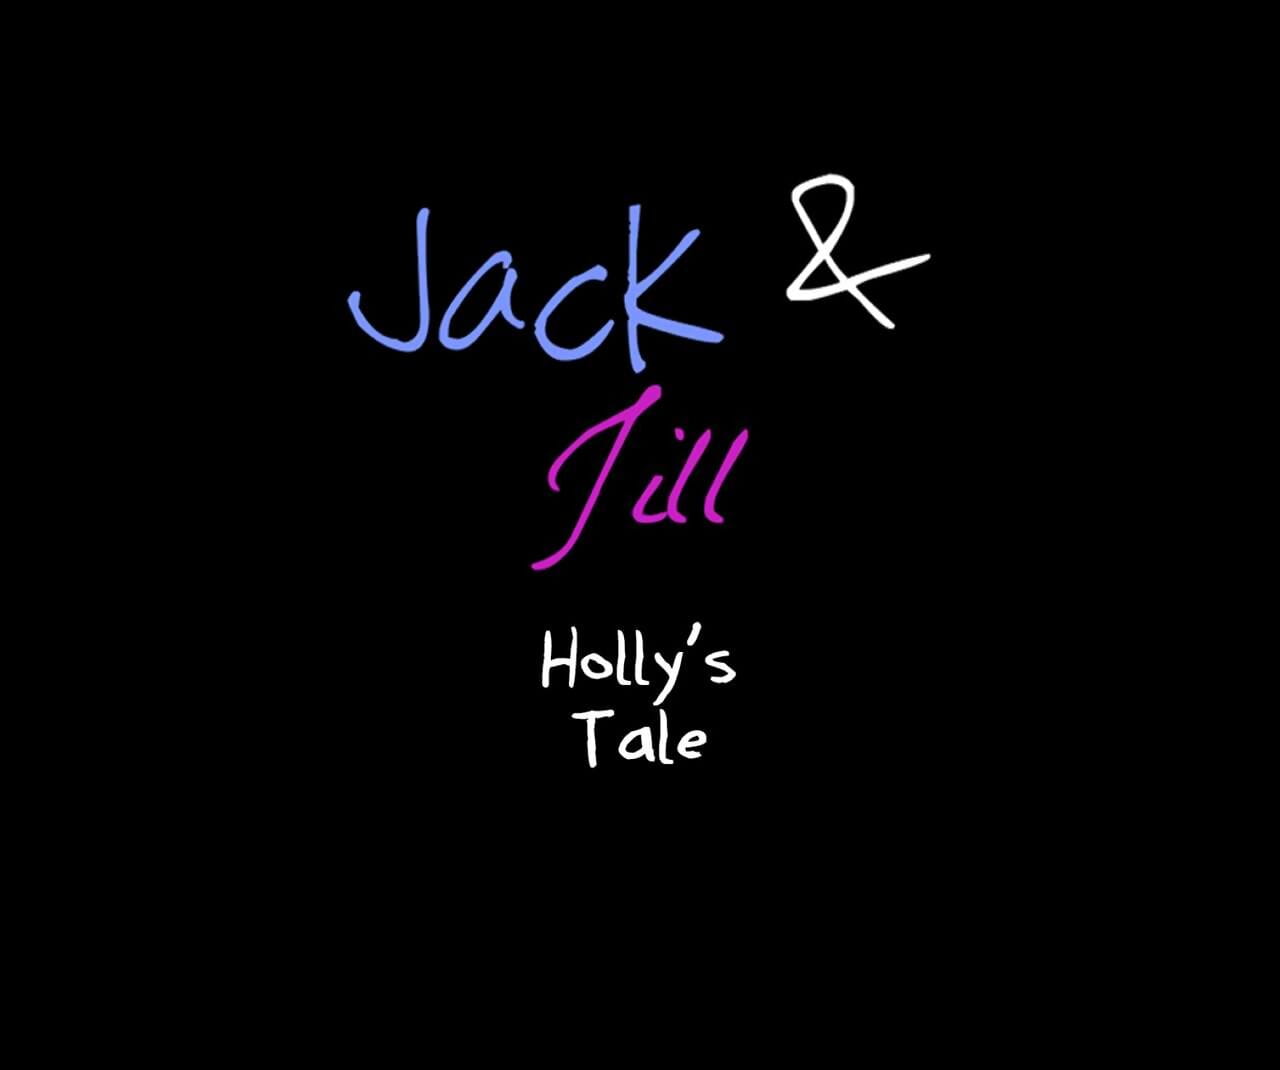 jack und jill Hollys Märchen page 1